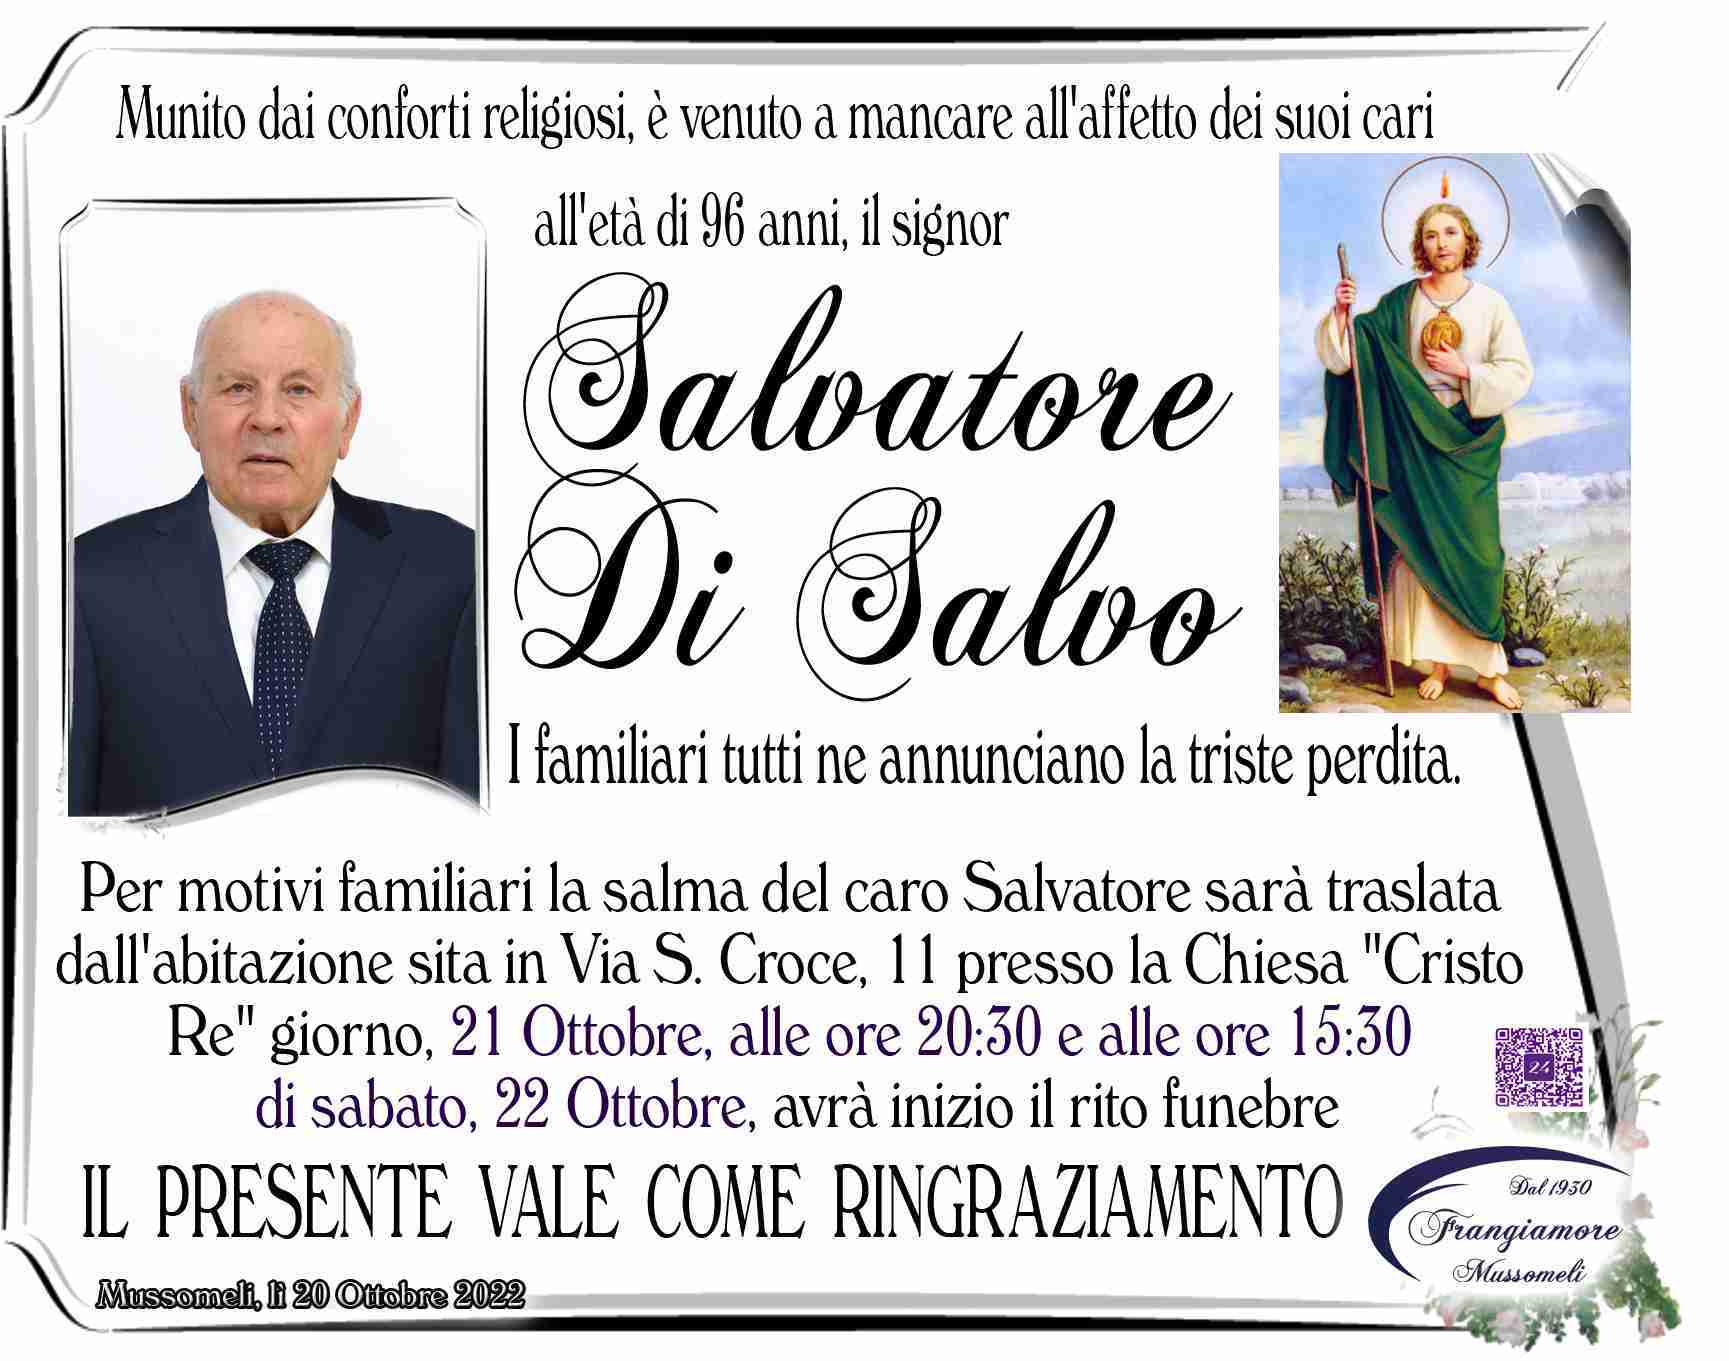 Salvatore Di Salvo